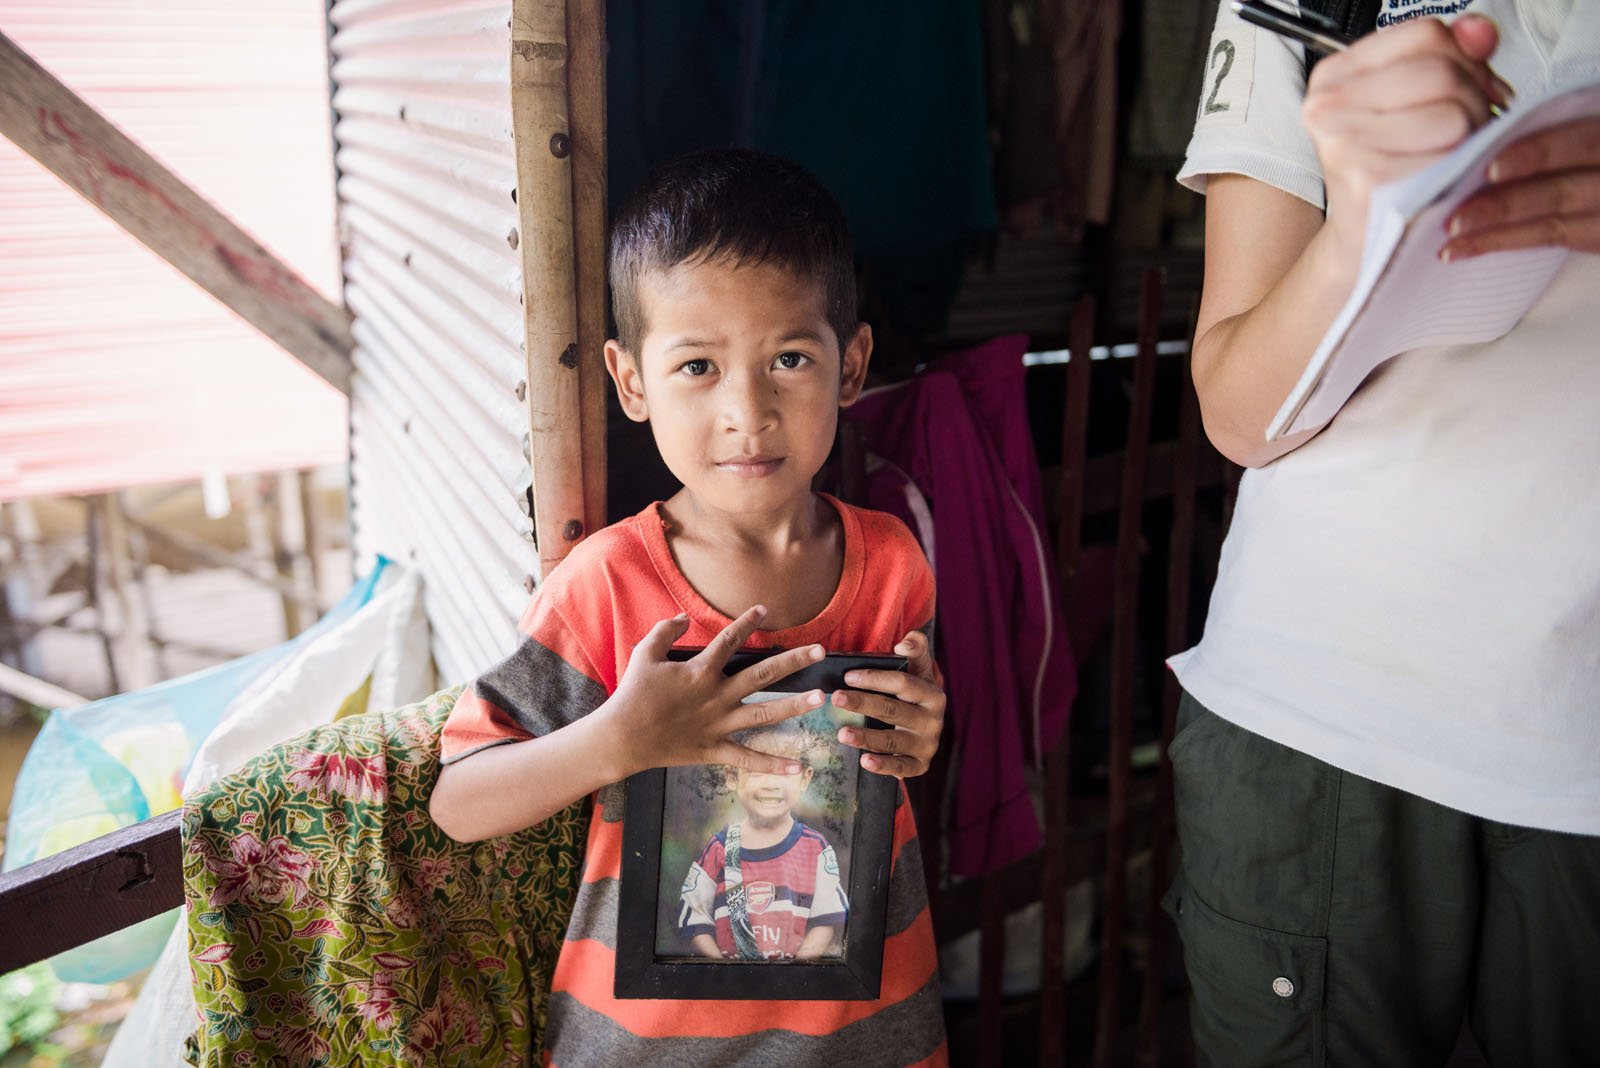 再次去柬埔寨，张嘉樵回到曾经去过的村子，这个孩子盯著他许久后，跑到屋内将照片拿出来，表示他还记得张嘉樵曾经为他们拍照。